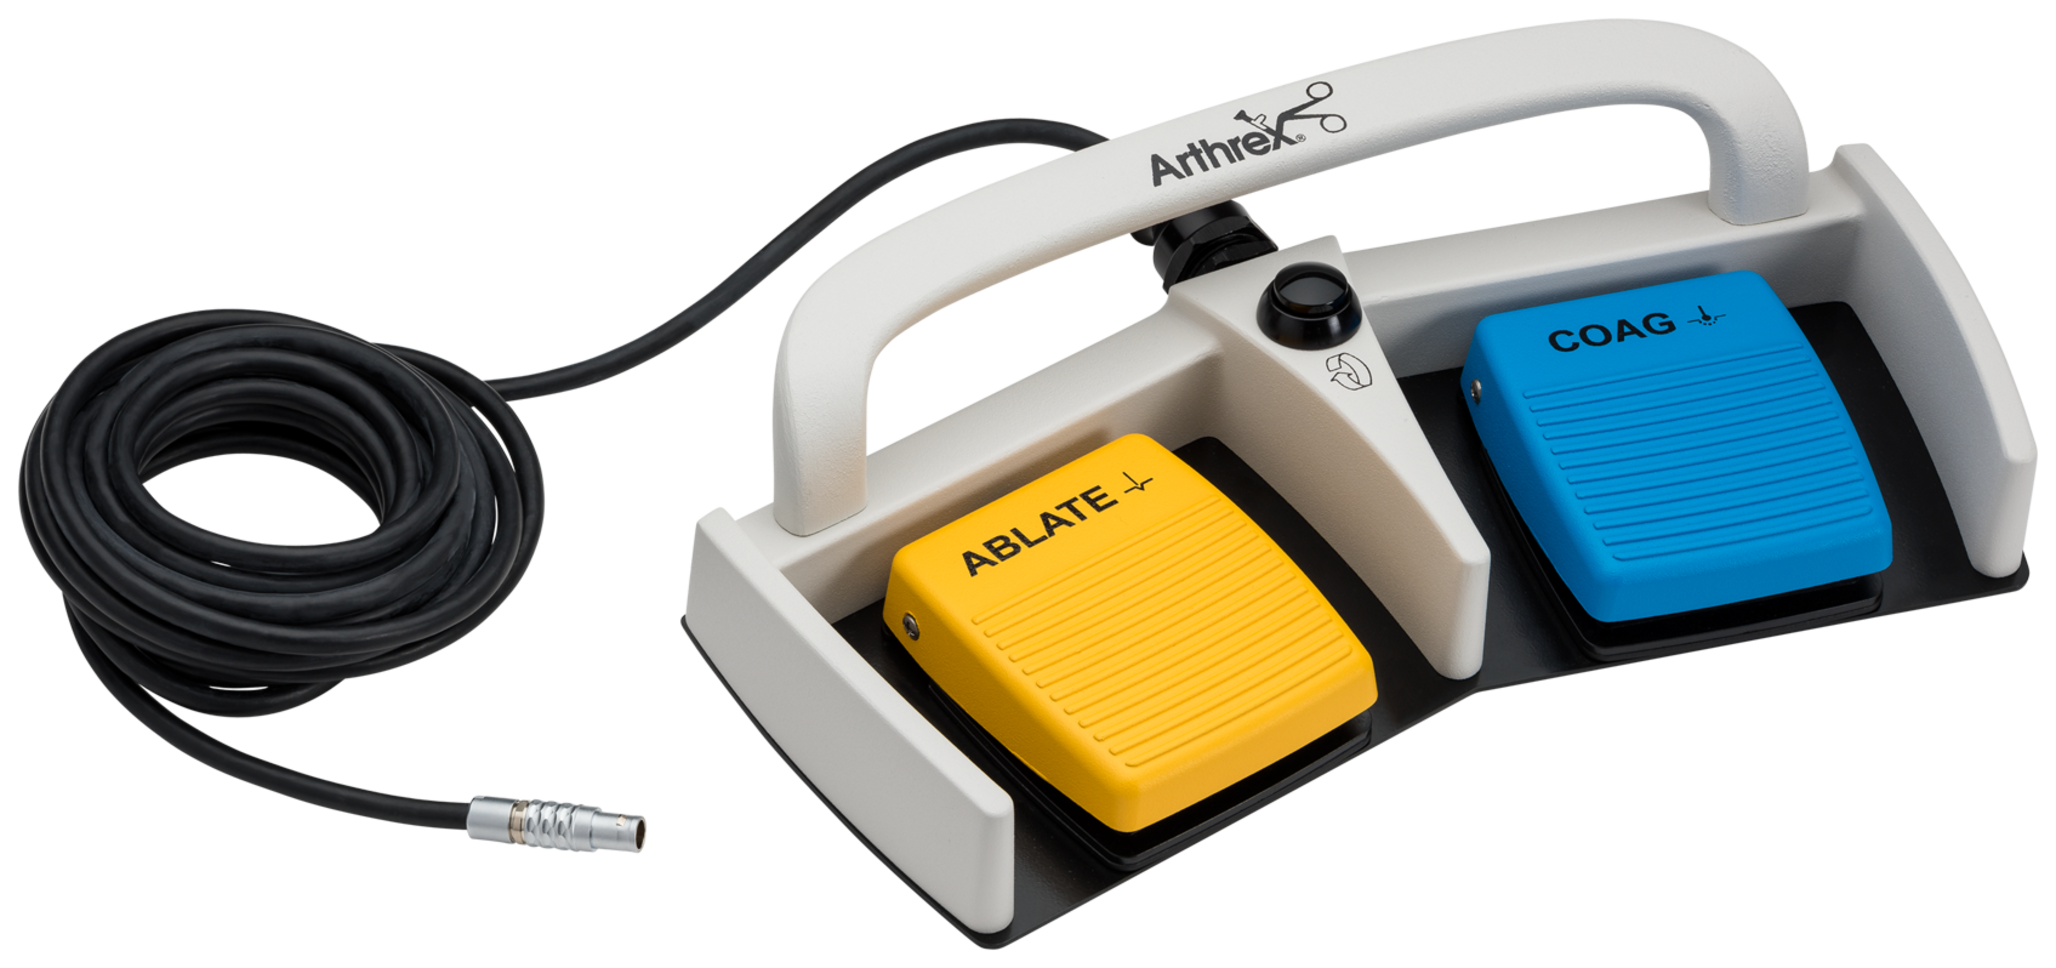 Arthrex - SynergyRF Footswitch - AR-9800-F